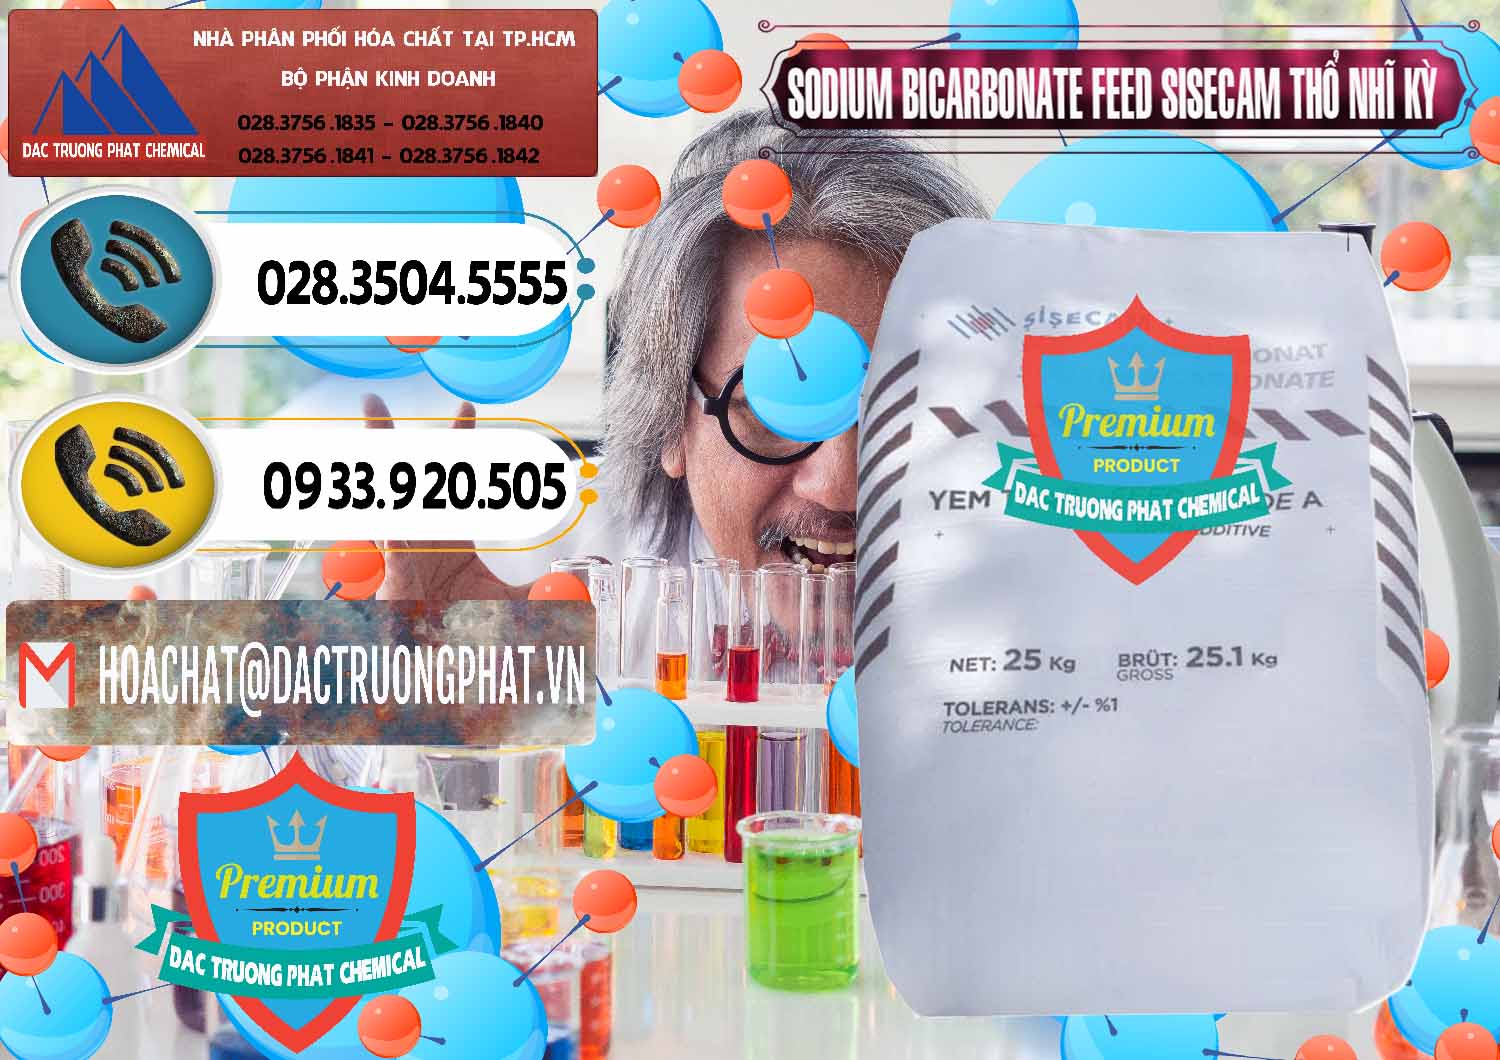 Công ty cung cấp - bán Sodium Bicarbonate – Bicar NaHCO3 Feed Grade Thổ Nhĩ Kỳ Turkey - 0265 - Cty cung cấp _ phân phối hóa chất tại TP.HCM - hoachatdetnhuom.vn